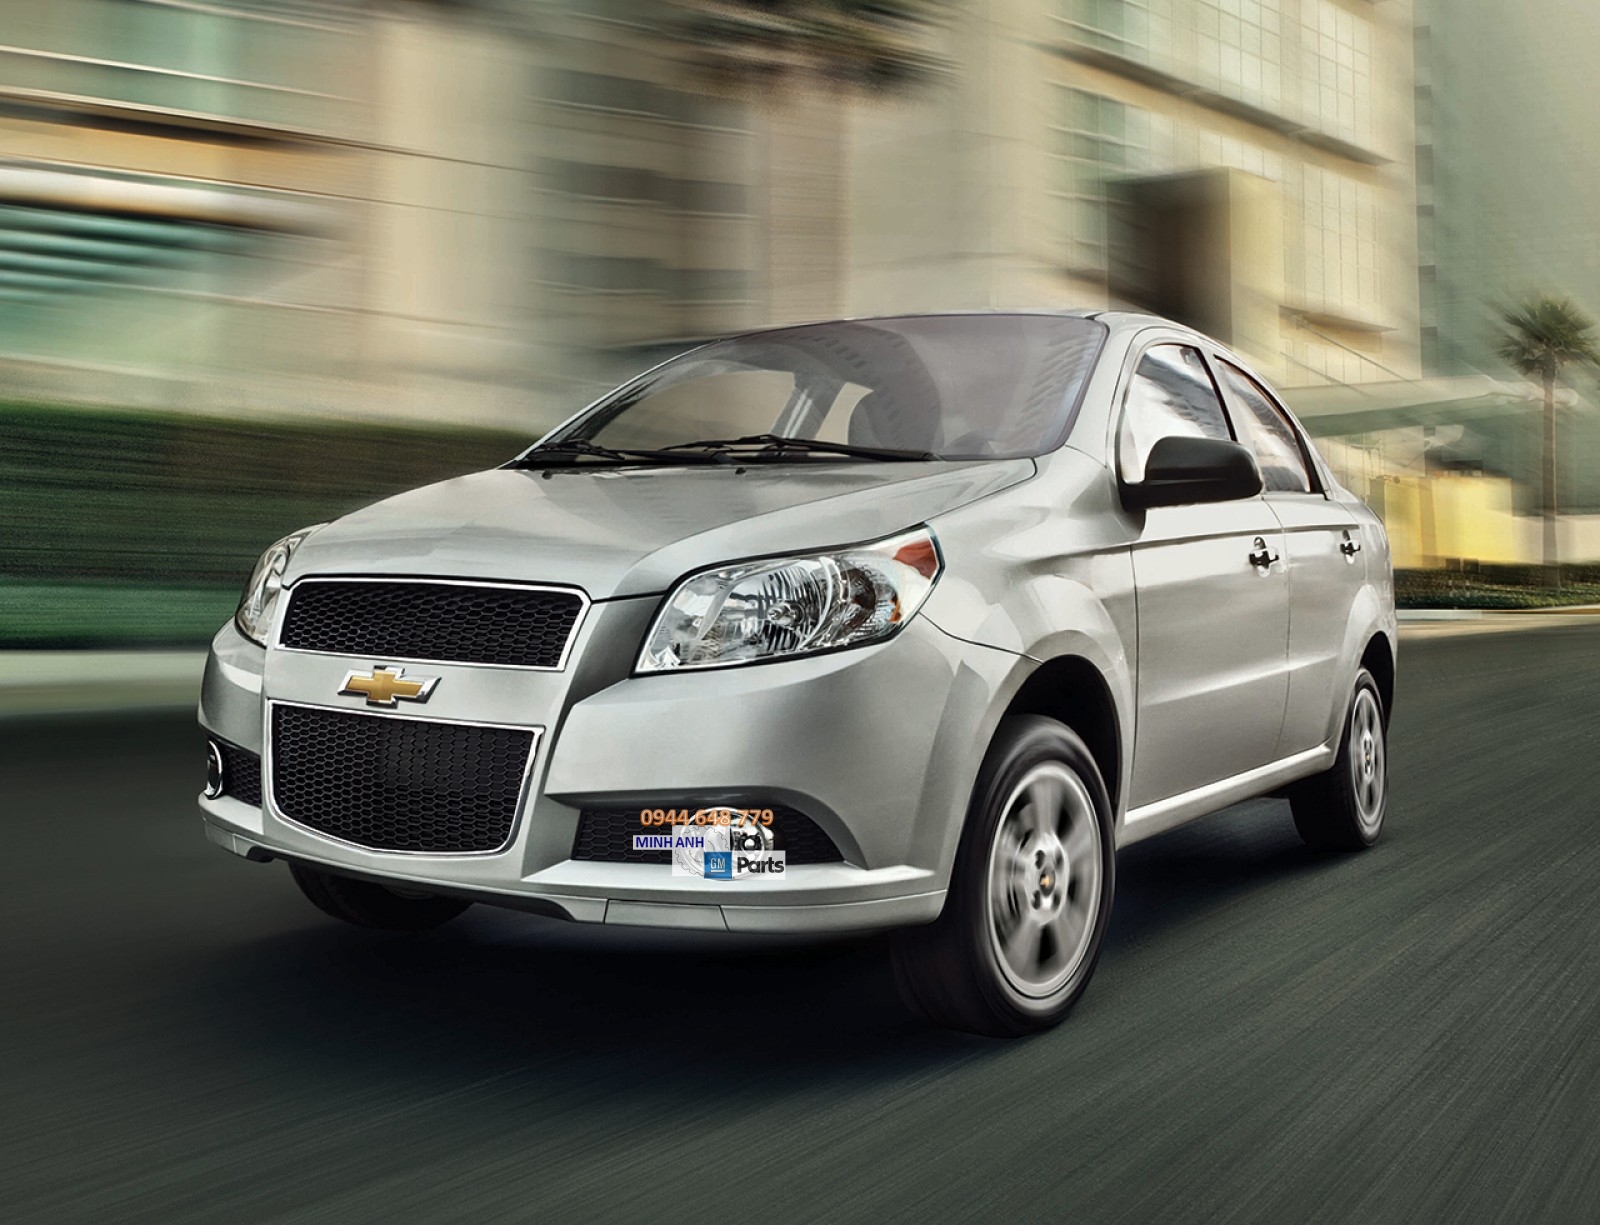 GM Việt Nam chính thức dừng sản xuất các dòng xe thương hiệu Chevrolet